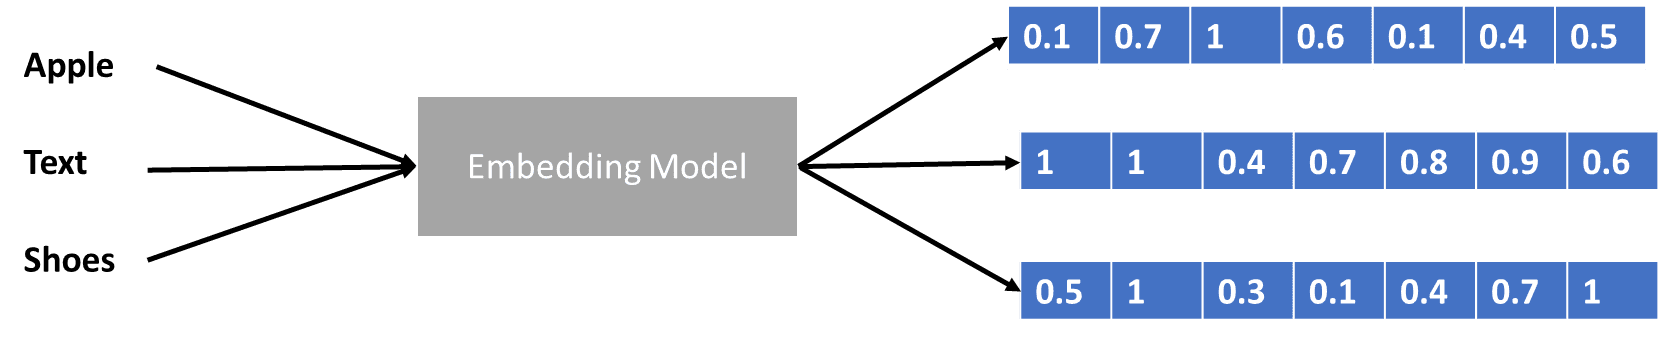 Grandes modelos de lenguaje explicados en 3 niveles de dificultad